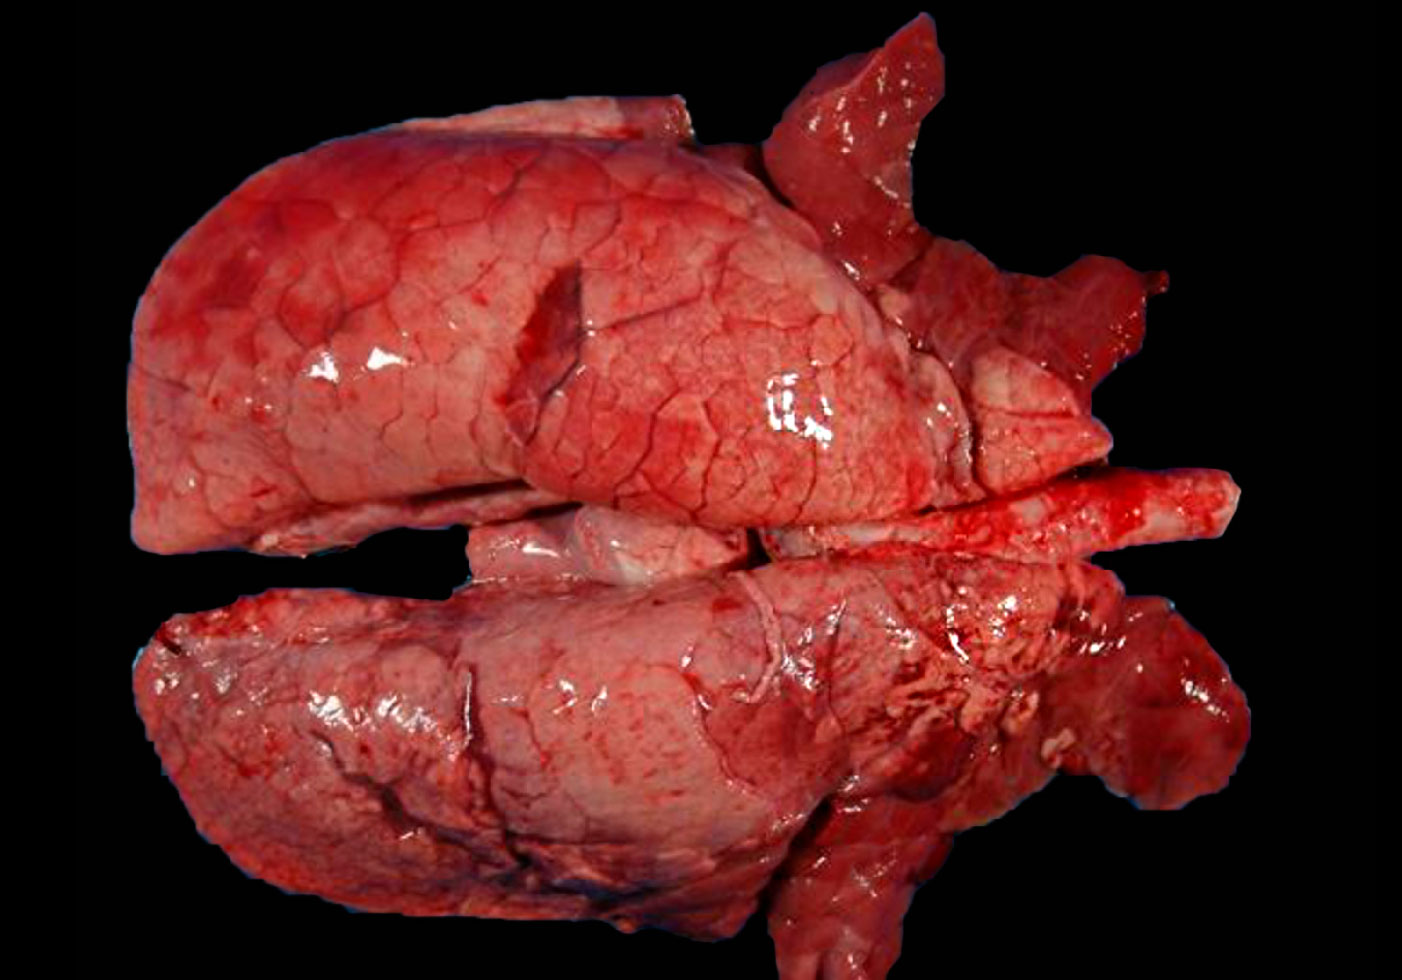 Figura 4. Pulm&oacute;n de un cerdo coinfectado con <em>M. hyopneumoniae</em> y SIV. &Aacute;reas de consolidaci&oacute;n de color rojo en las porciones craneoventrales del pulm&oacute;n y algunas otras de menor extensi&oacute;n en l&oacute;bulos diafragm&aacute;ticos. En estas lesiones craneoventrales coexisten las lesiones de <em>M. hyopneumoniae</em> y SIV, siendo imposible distinguirlas macrosc&oacute;picamente.
